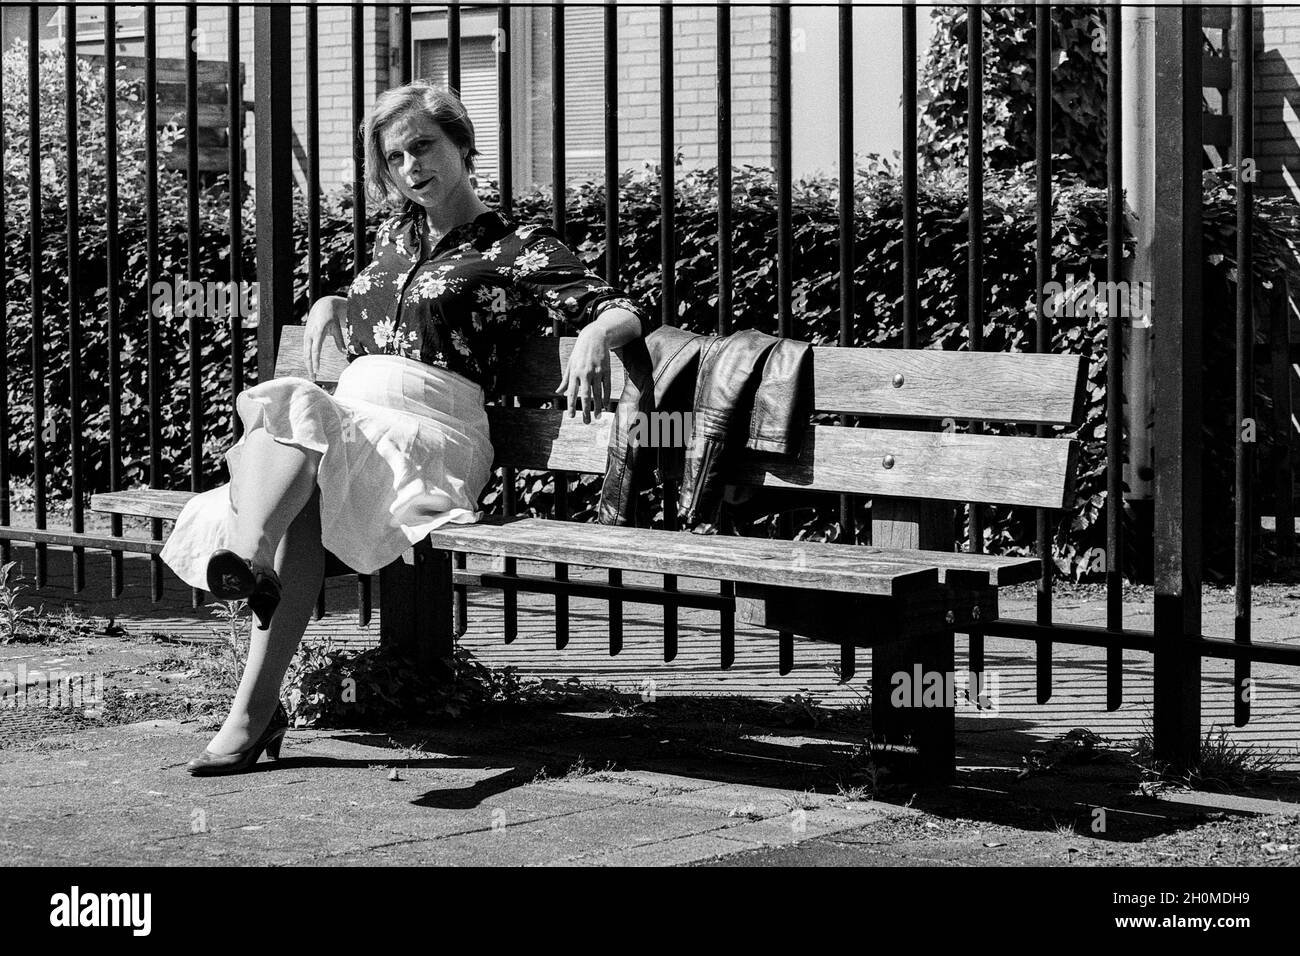 Tilburg, pays-Bas.Adulte, caucasien et attrayante, femme blinde se détendre et de profiter dans le quartier het parc en bas de la ville. Banque D'Images